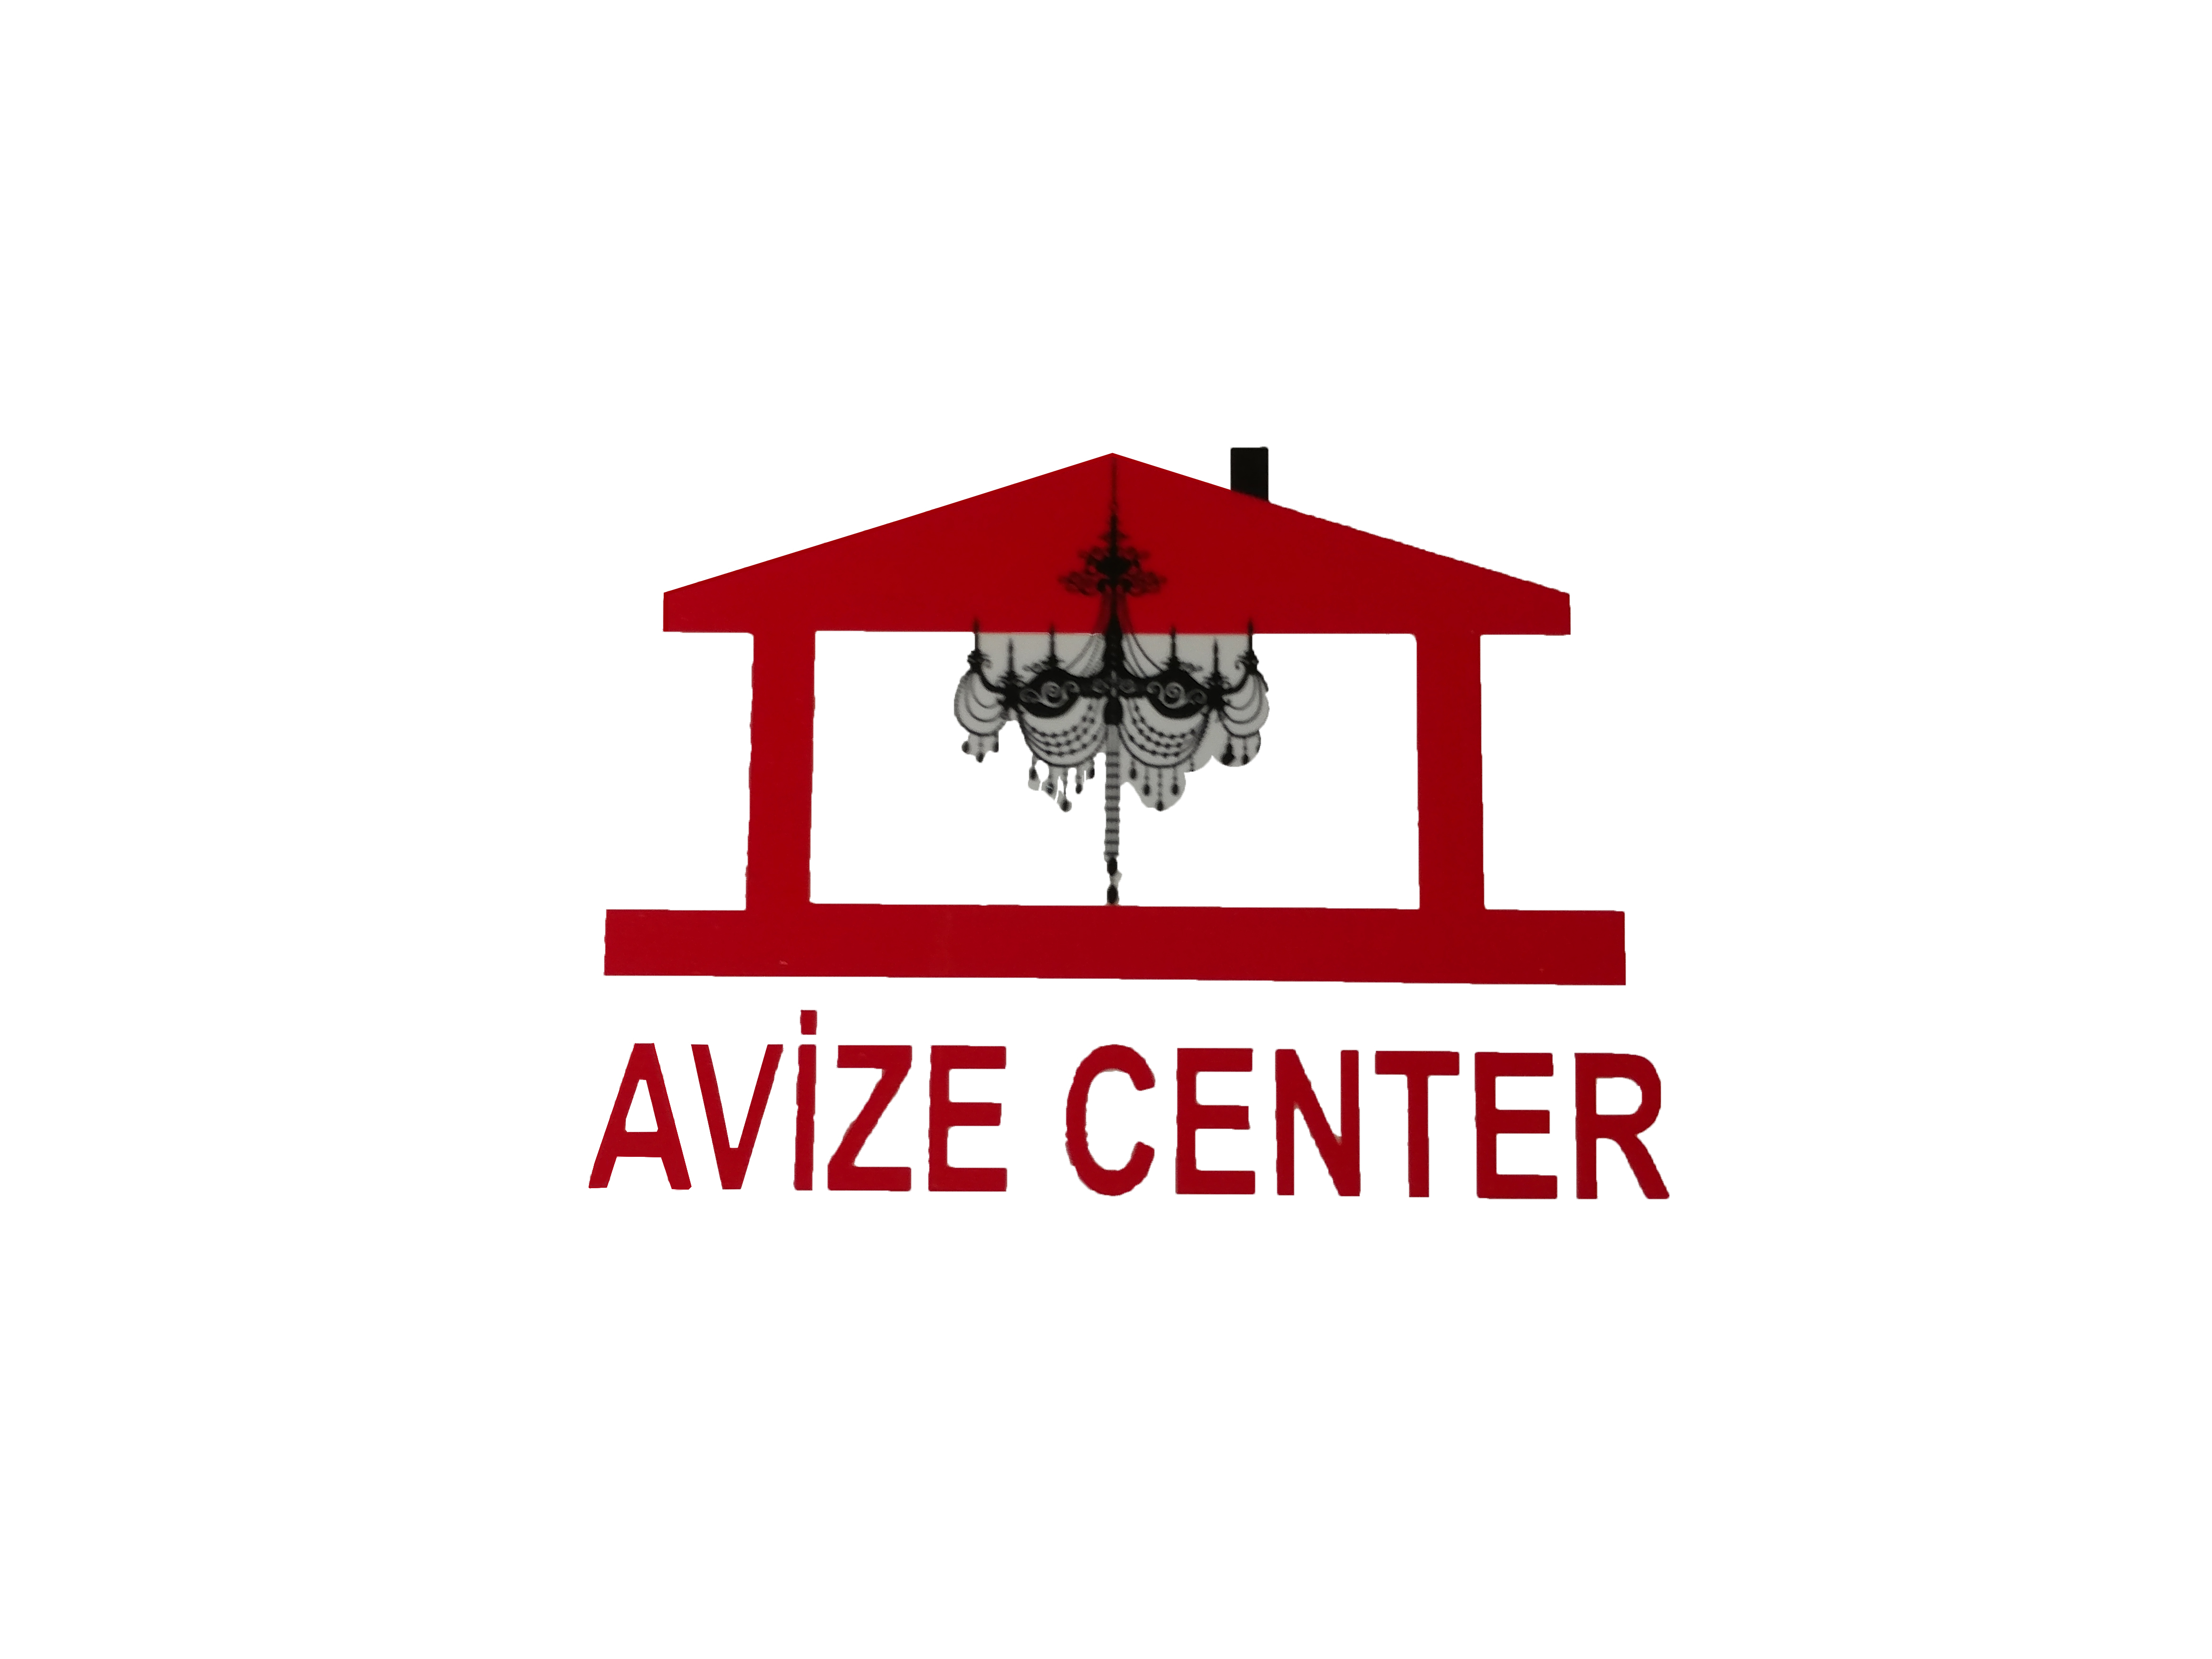 Avize center